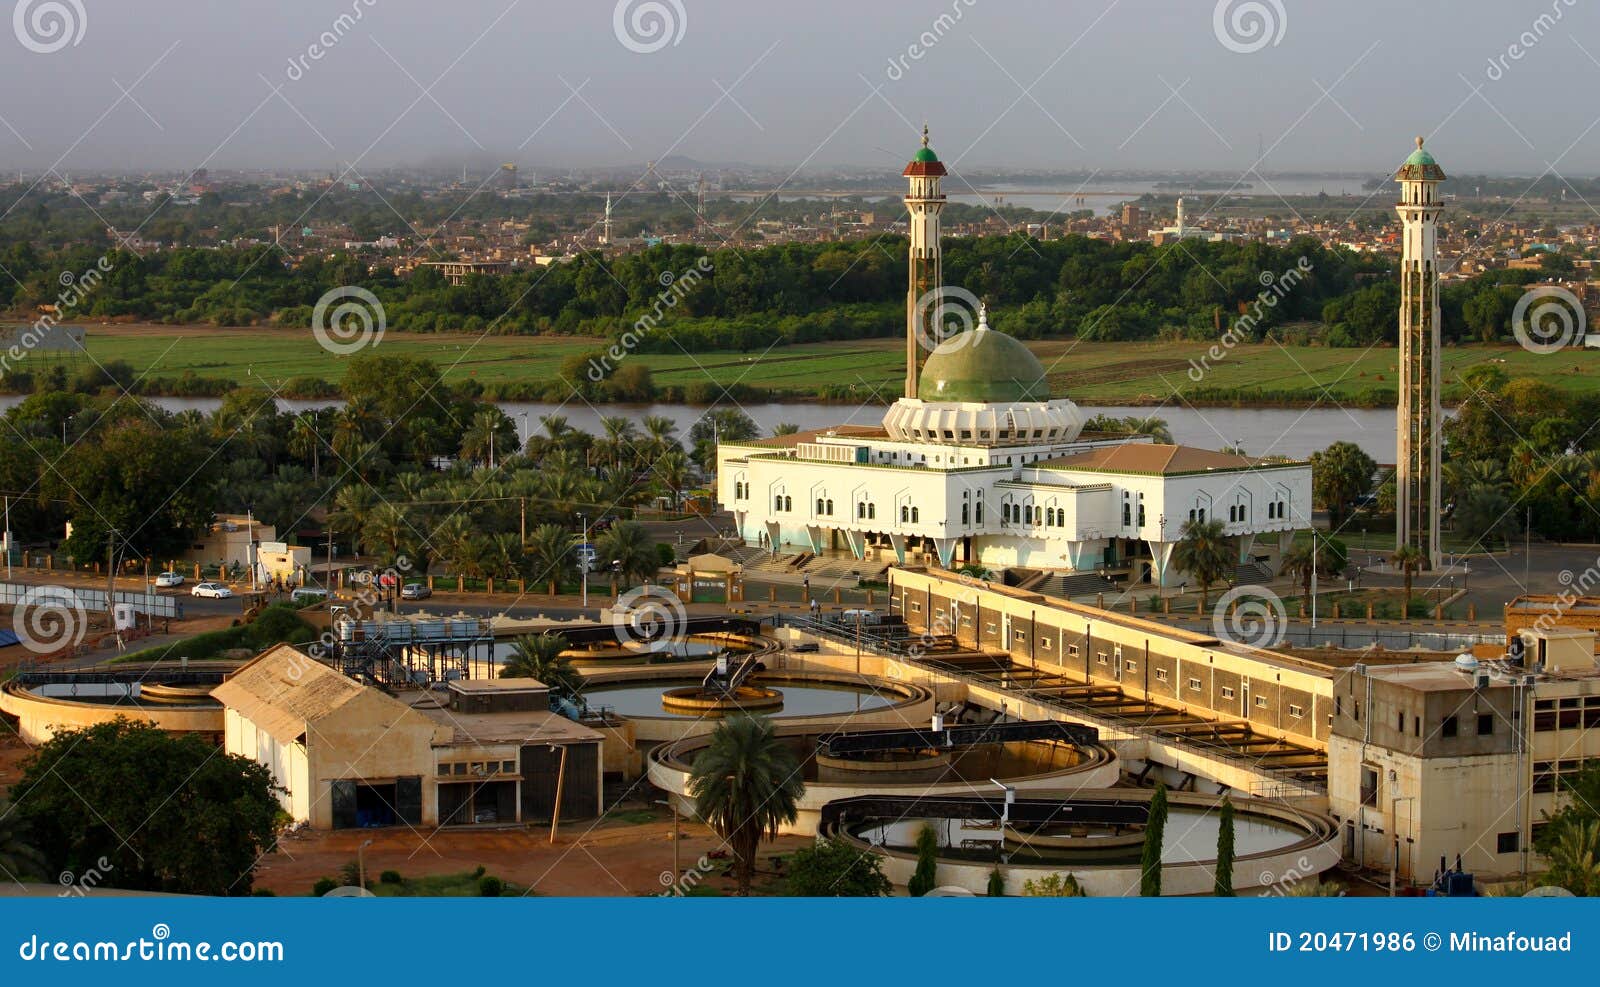 al-mogran mosque, khartoum, sudan.